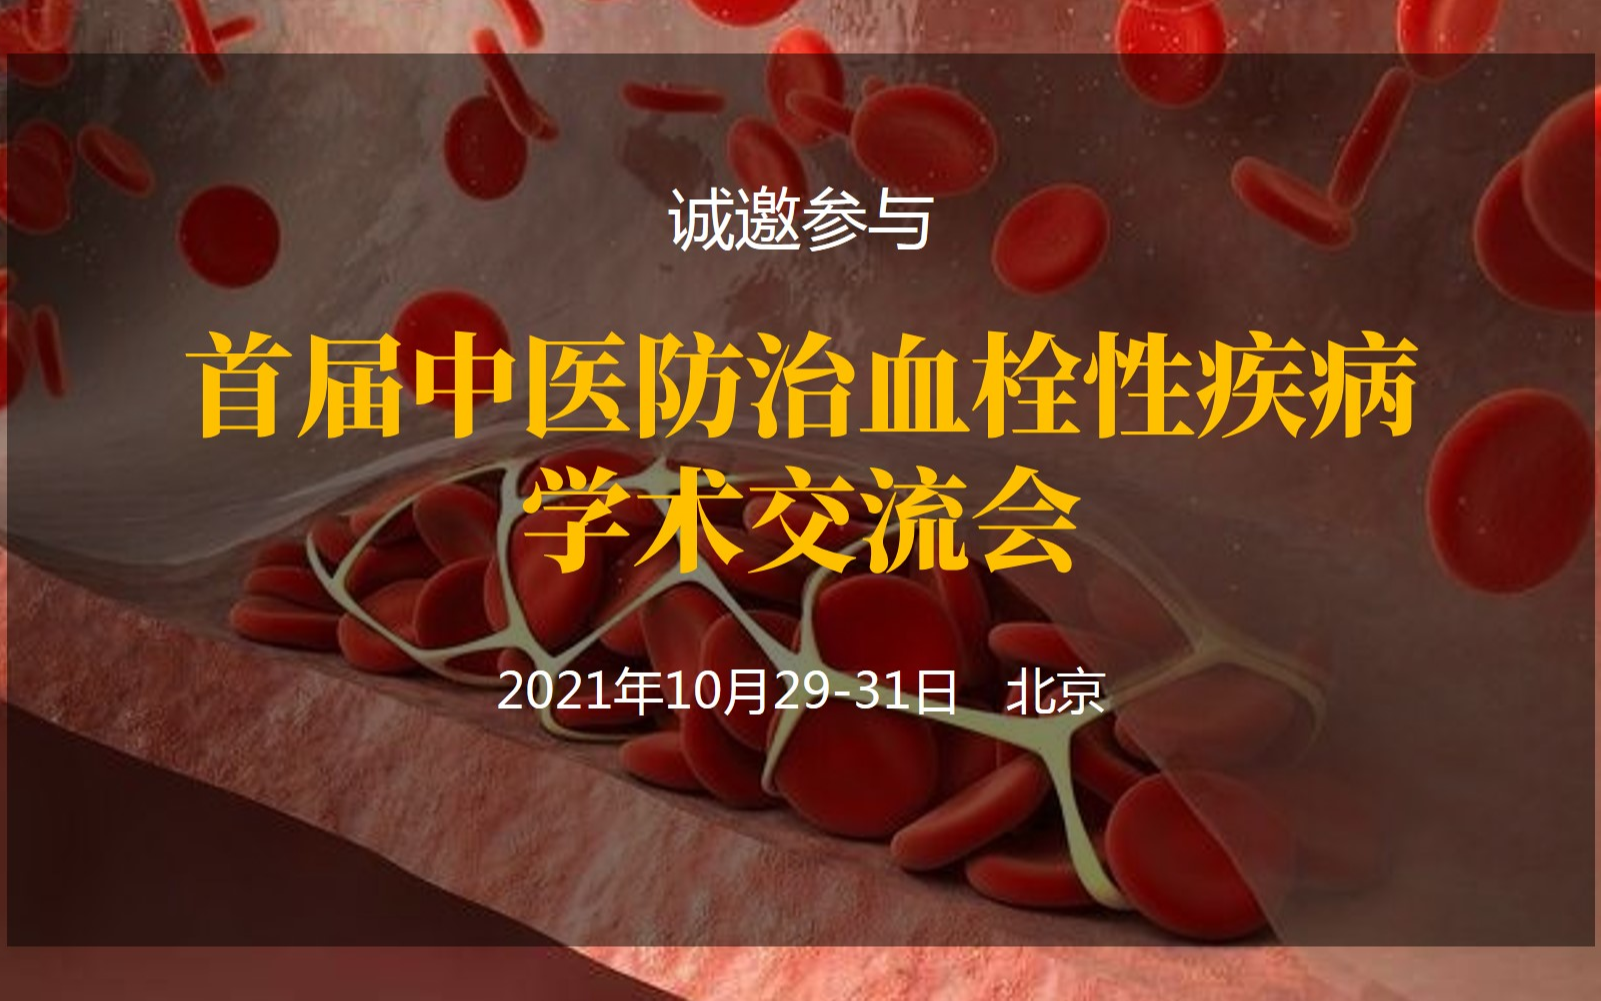 中国中医药信息学会中医临床药学分会2021年年会暨首届中医防治血栓性疾病学术交流会